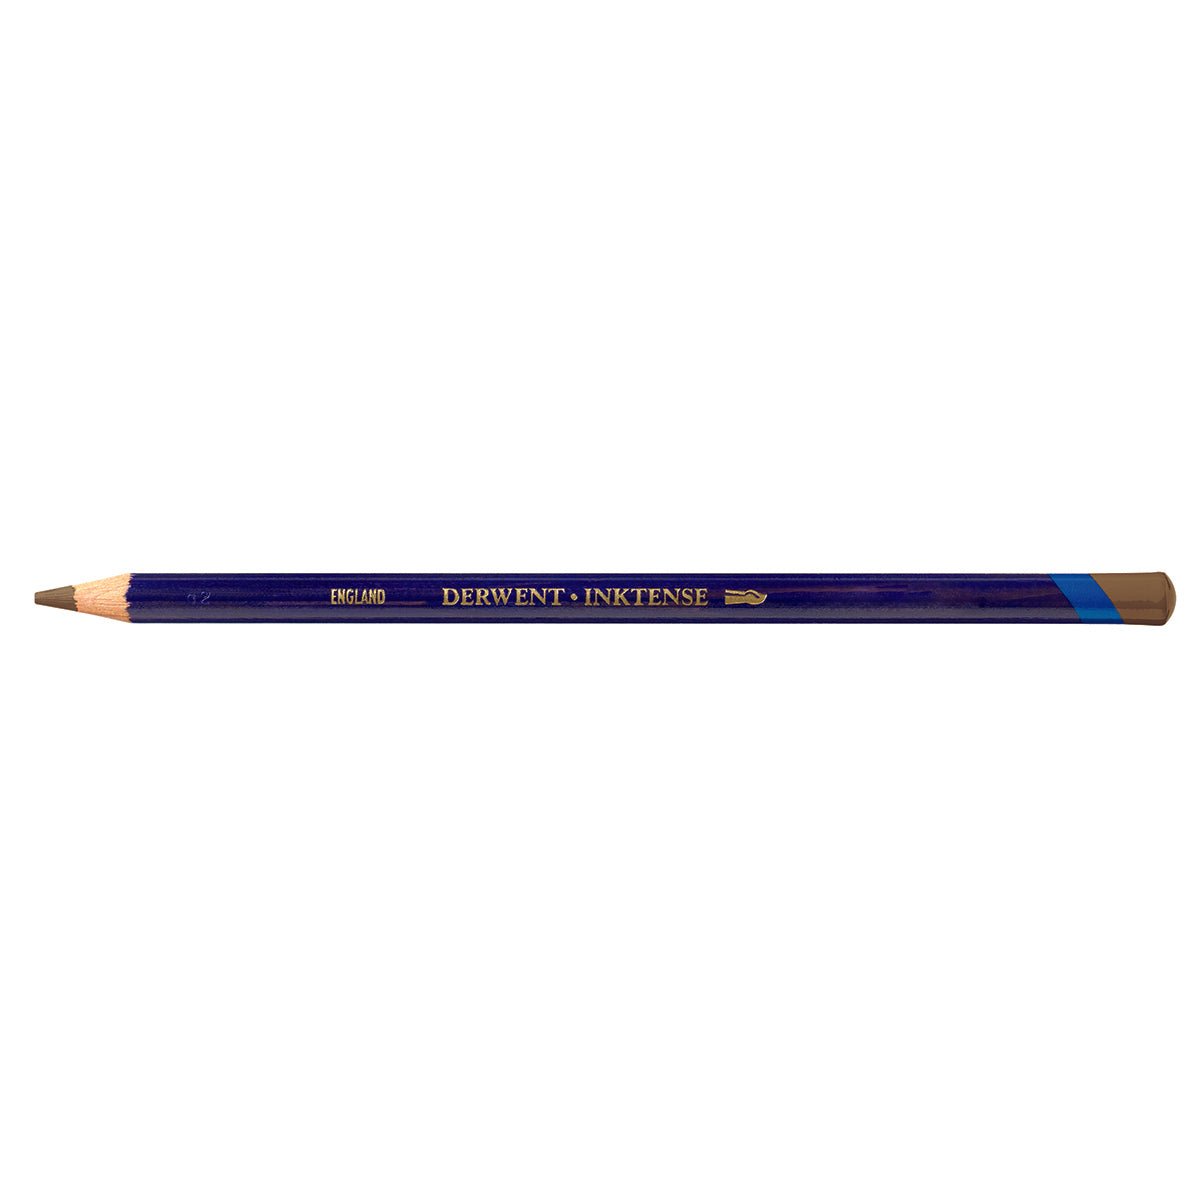 Derwent Inktense Pencil 1720 Tan - theartshop.com.au